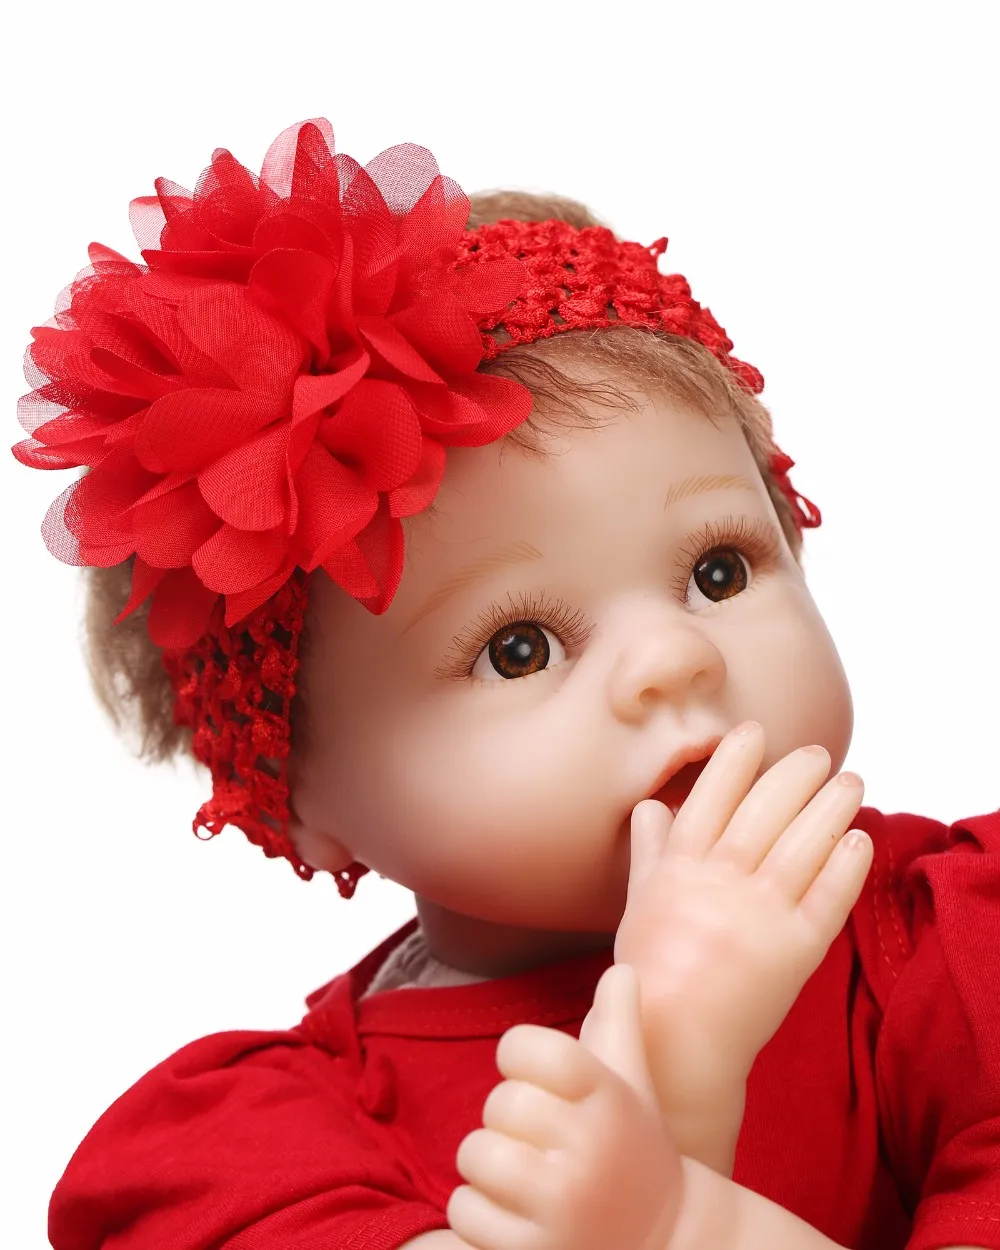 Reborn Baby Doll 22 дюймов 55 см мягкие силиконовые прекрасный реалистичные Симпатичные для маленьких девочек с Рождество дерево одежда Best детей